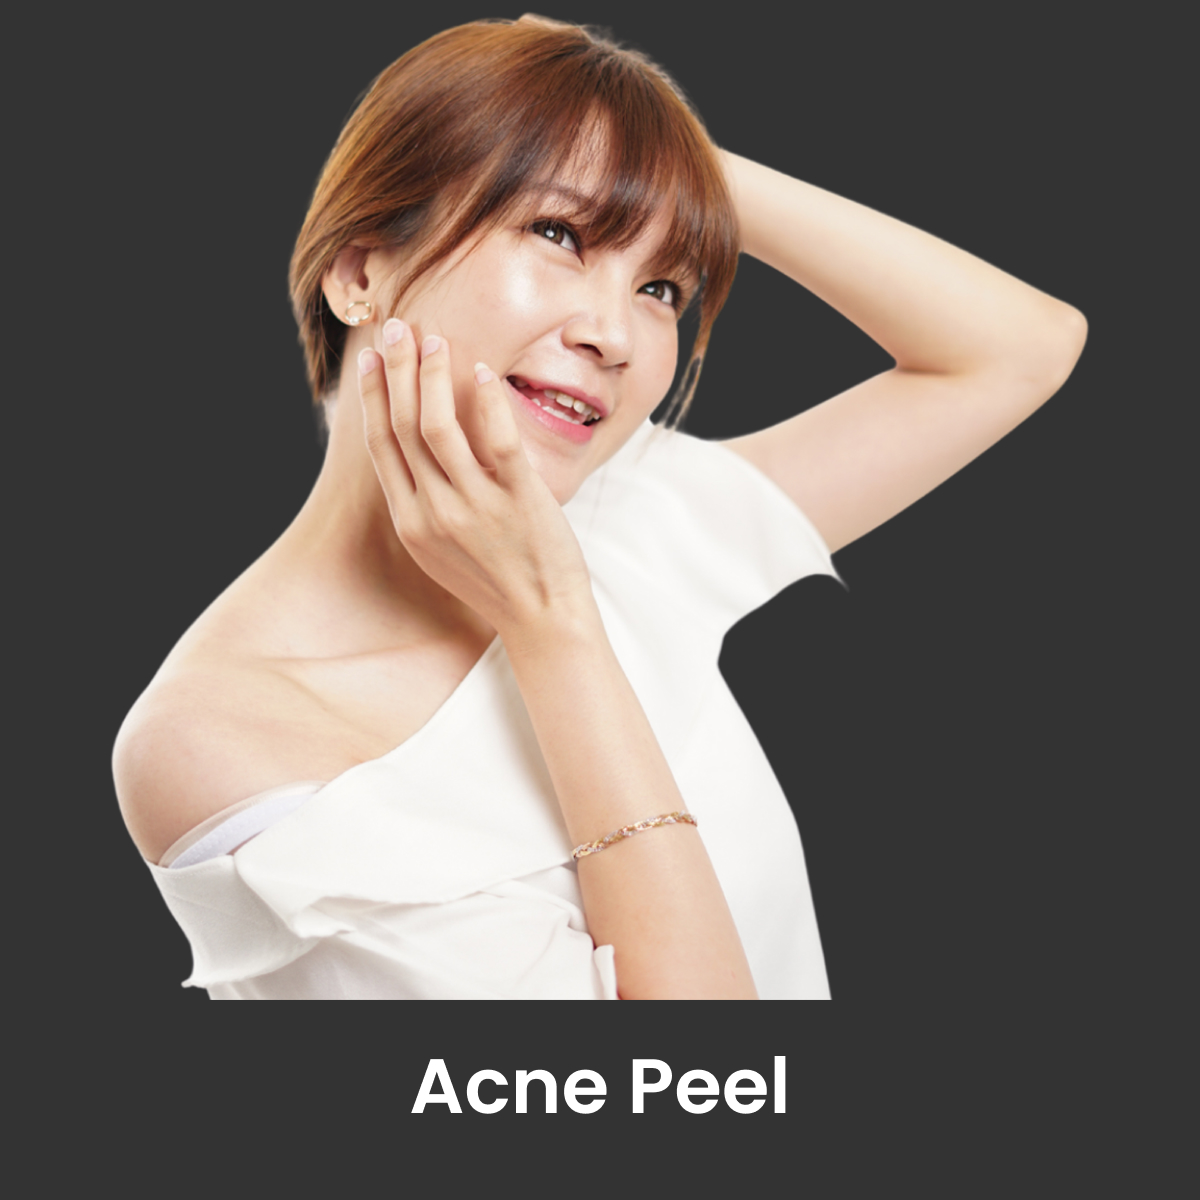 Acne Peel